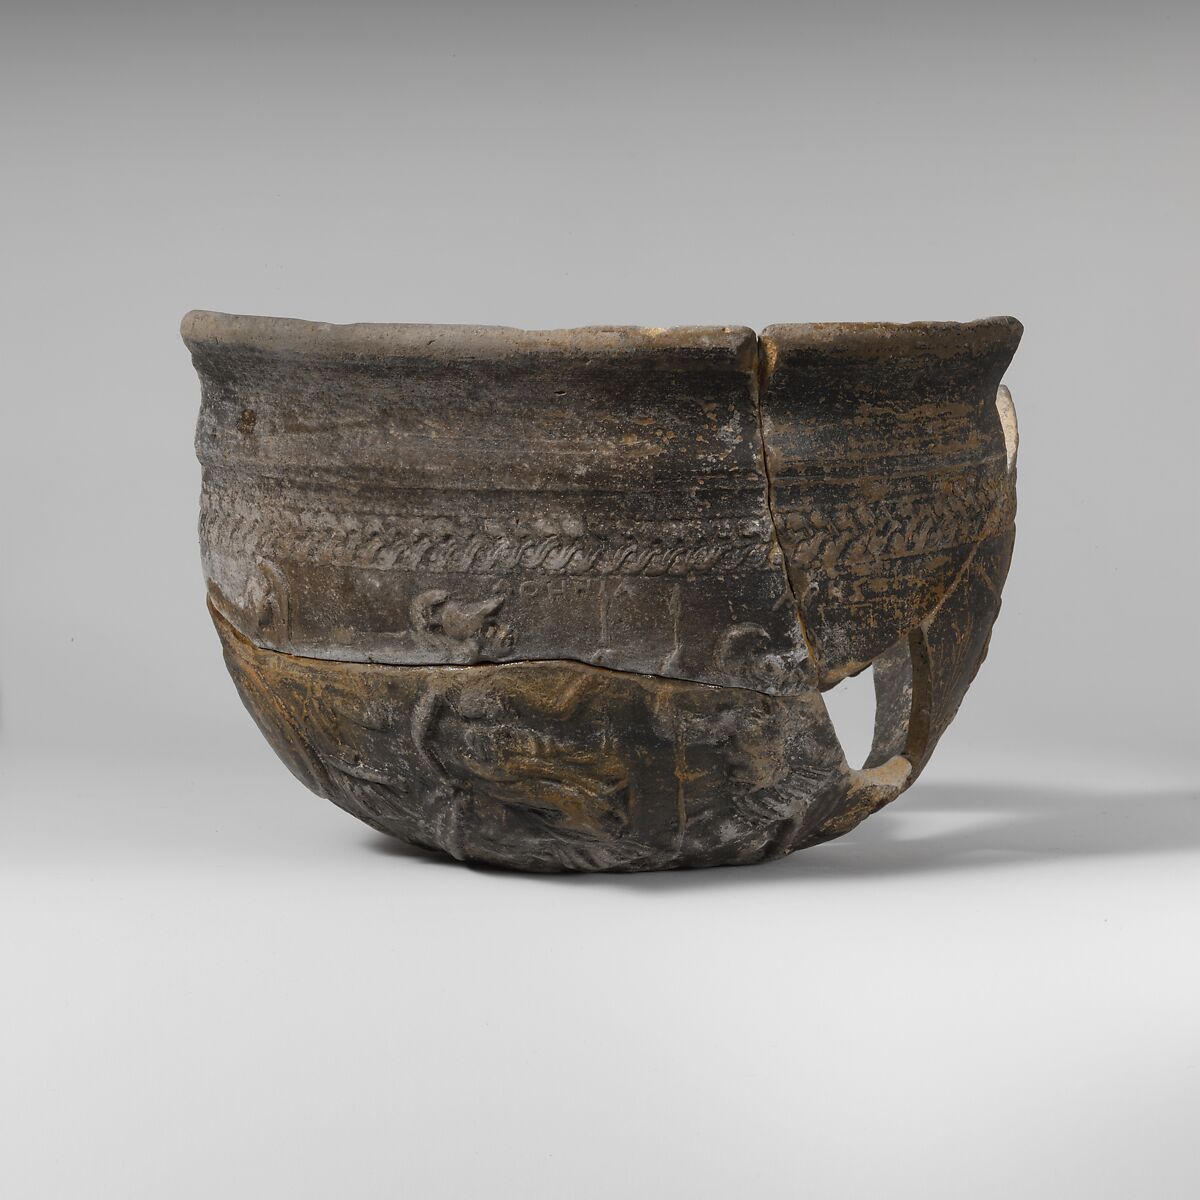 Megarian bowl, fragmentary, Terracotta, Greek